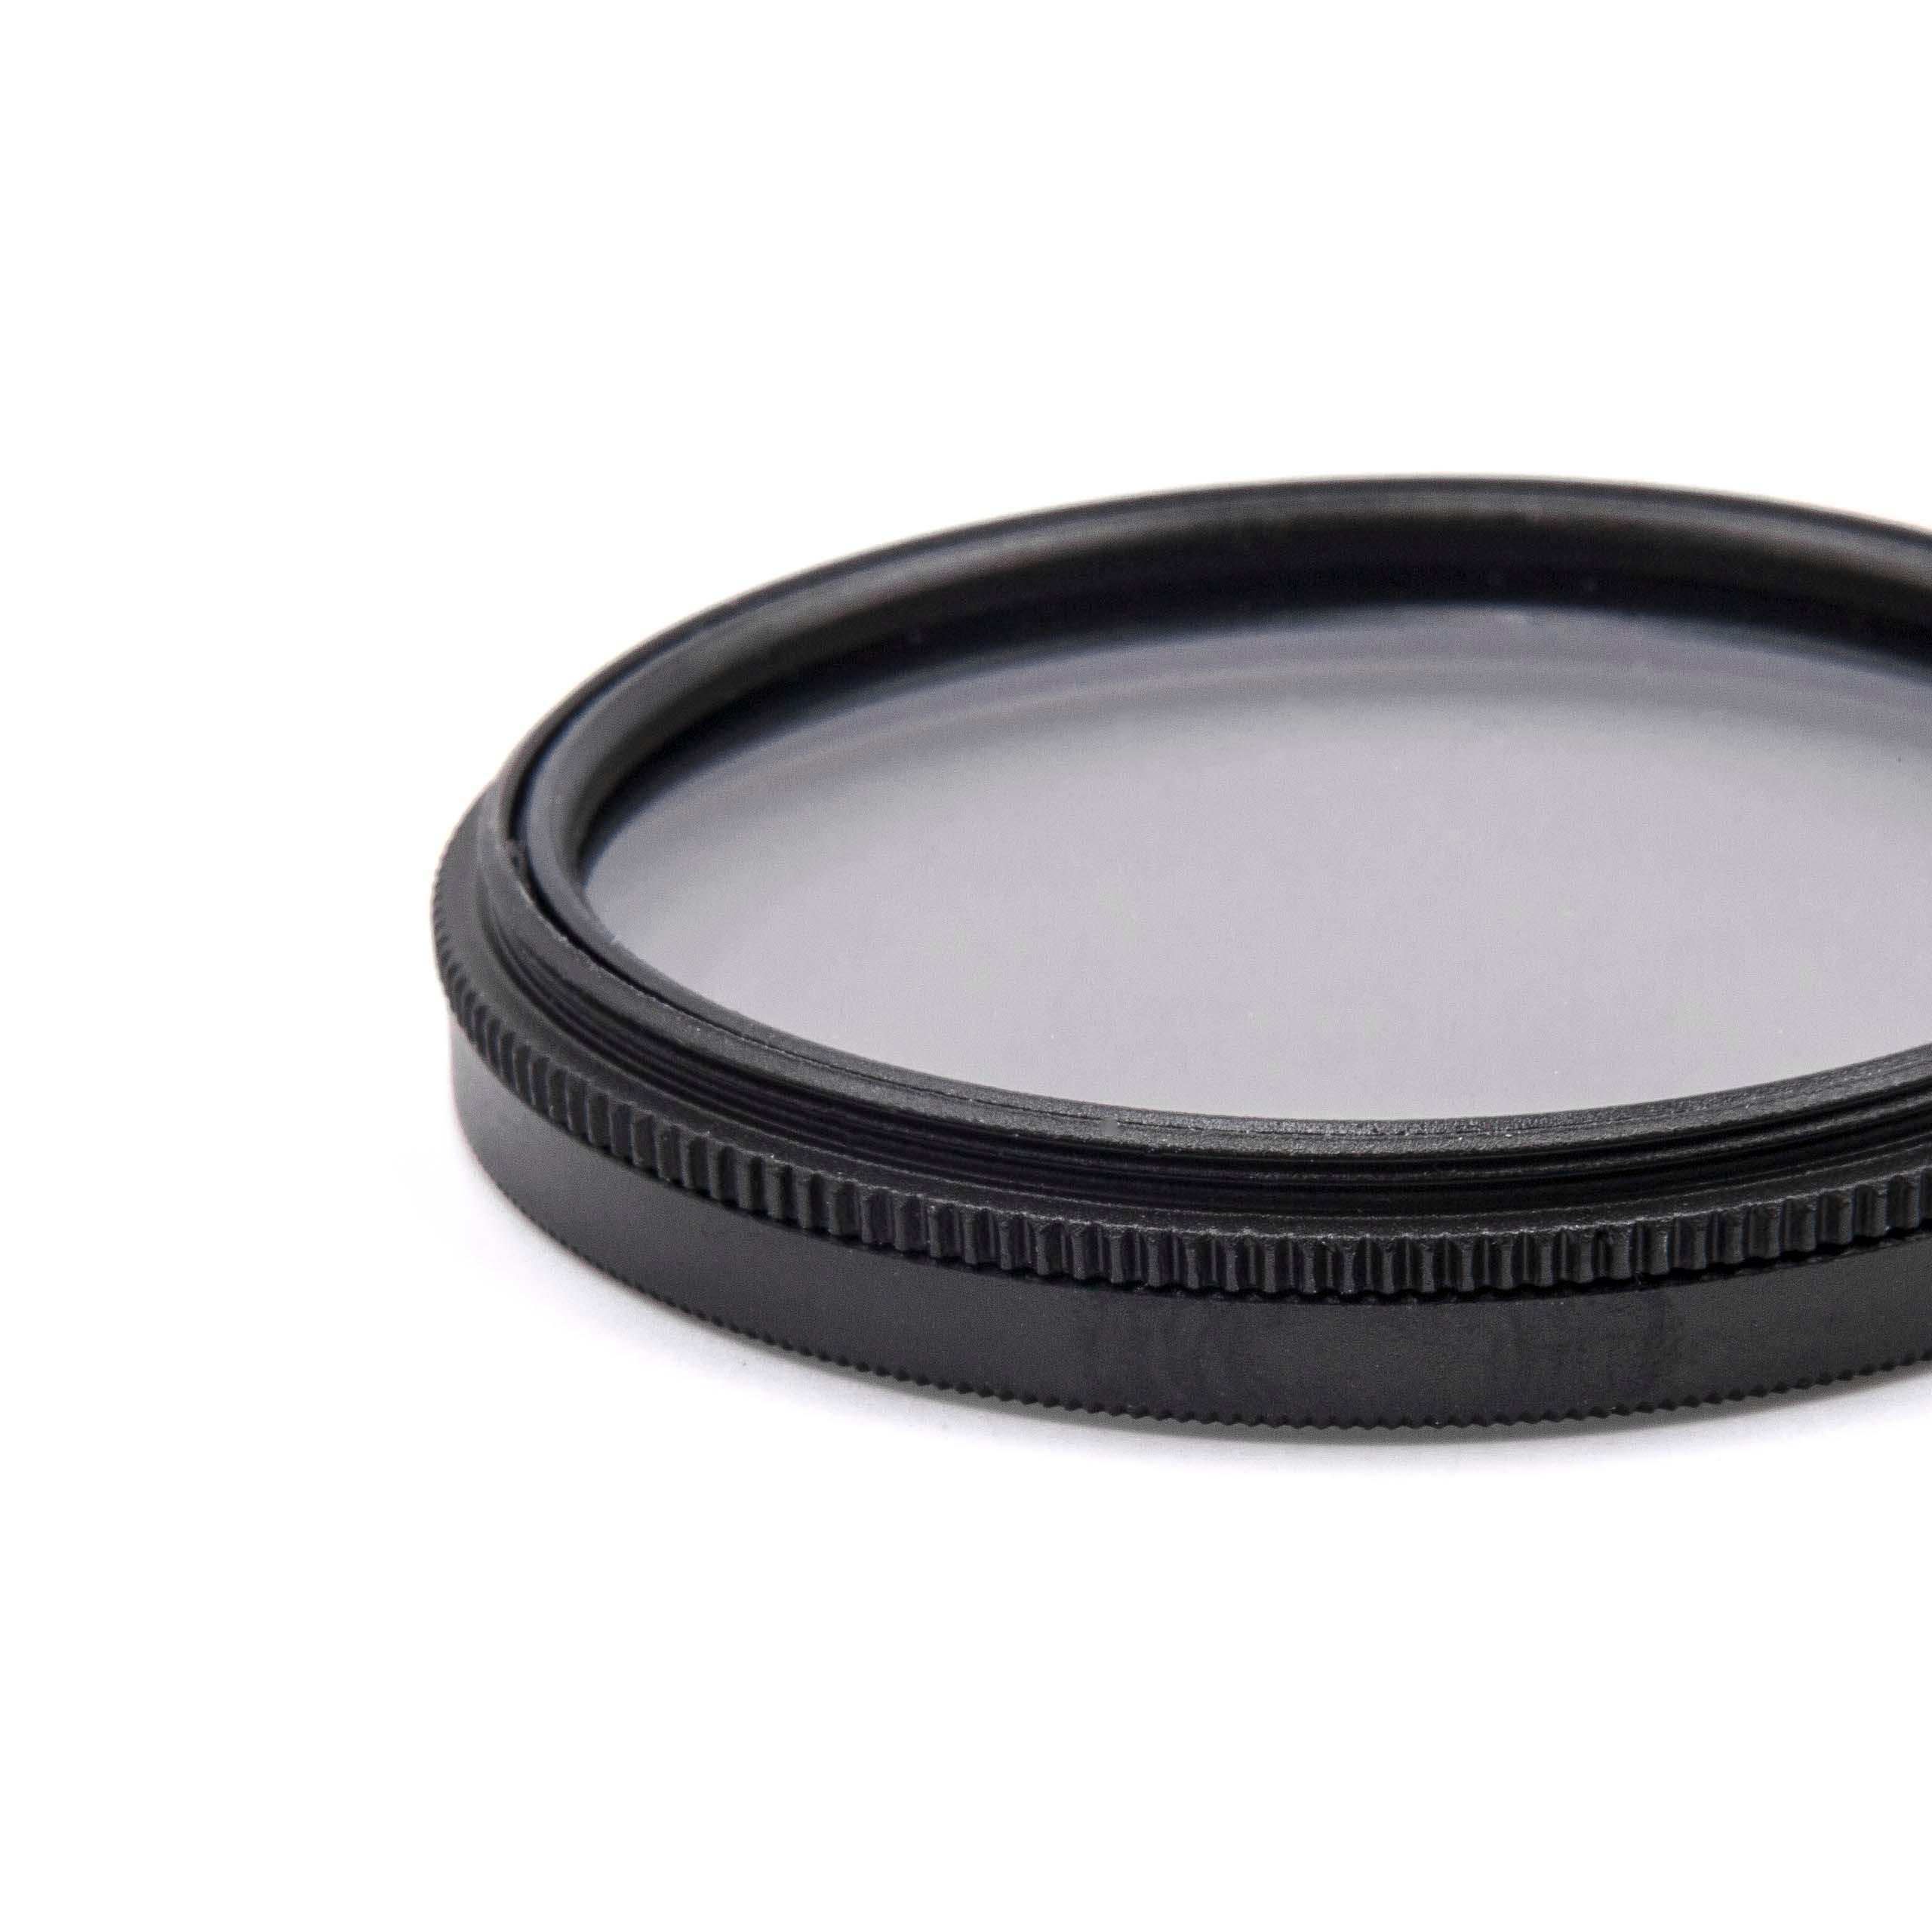 Filtro polarizzatore per camere e obiettivi con filettatura da 49 mm - filtro polarizzante circolare (CPL)